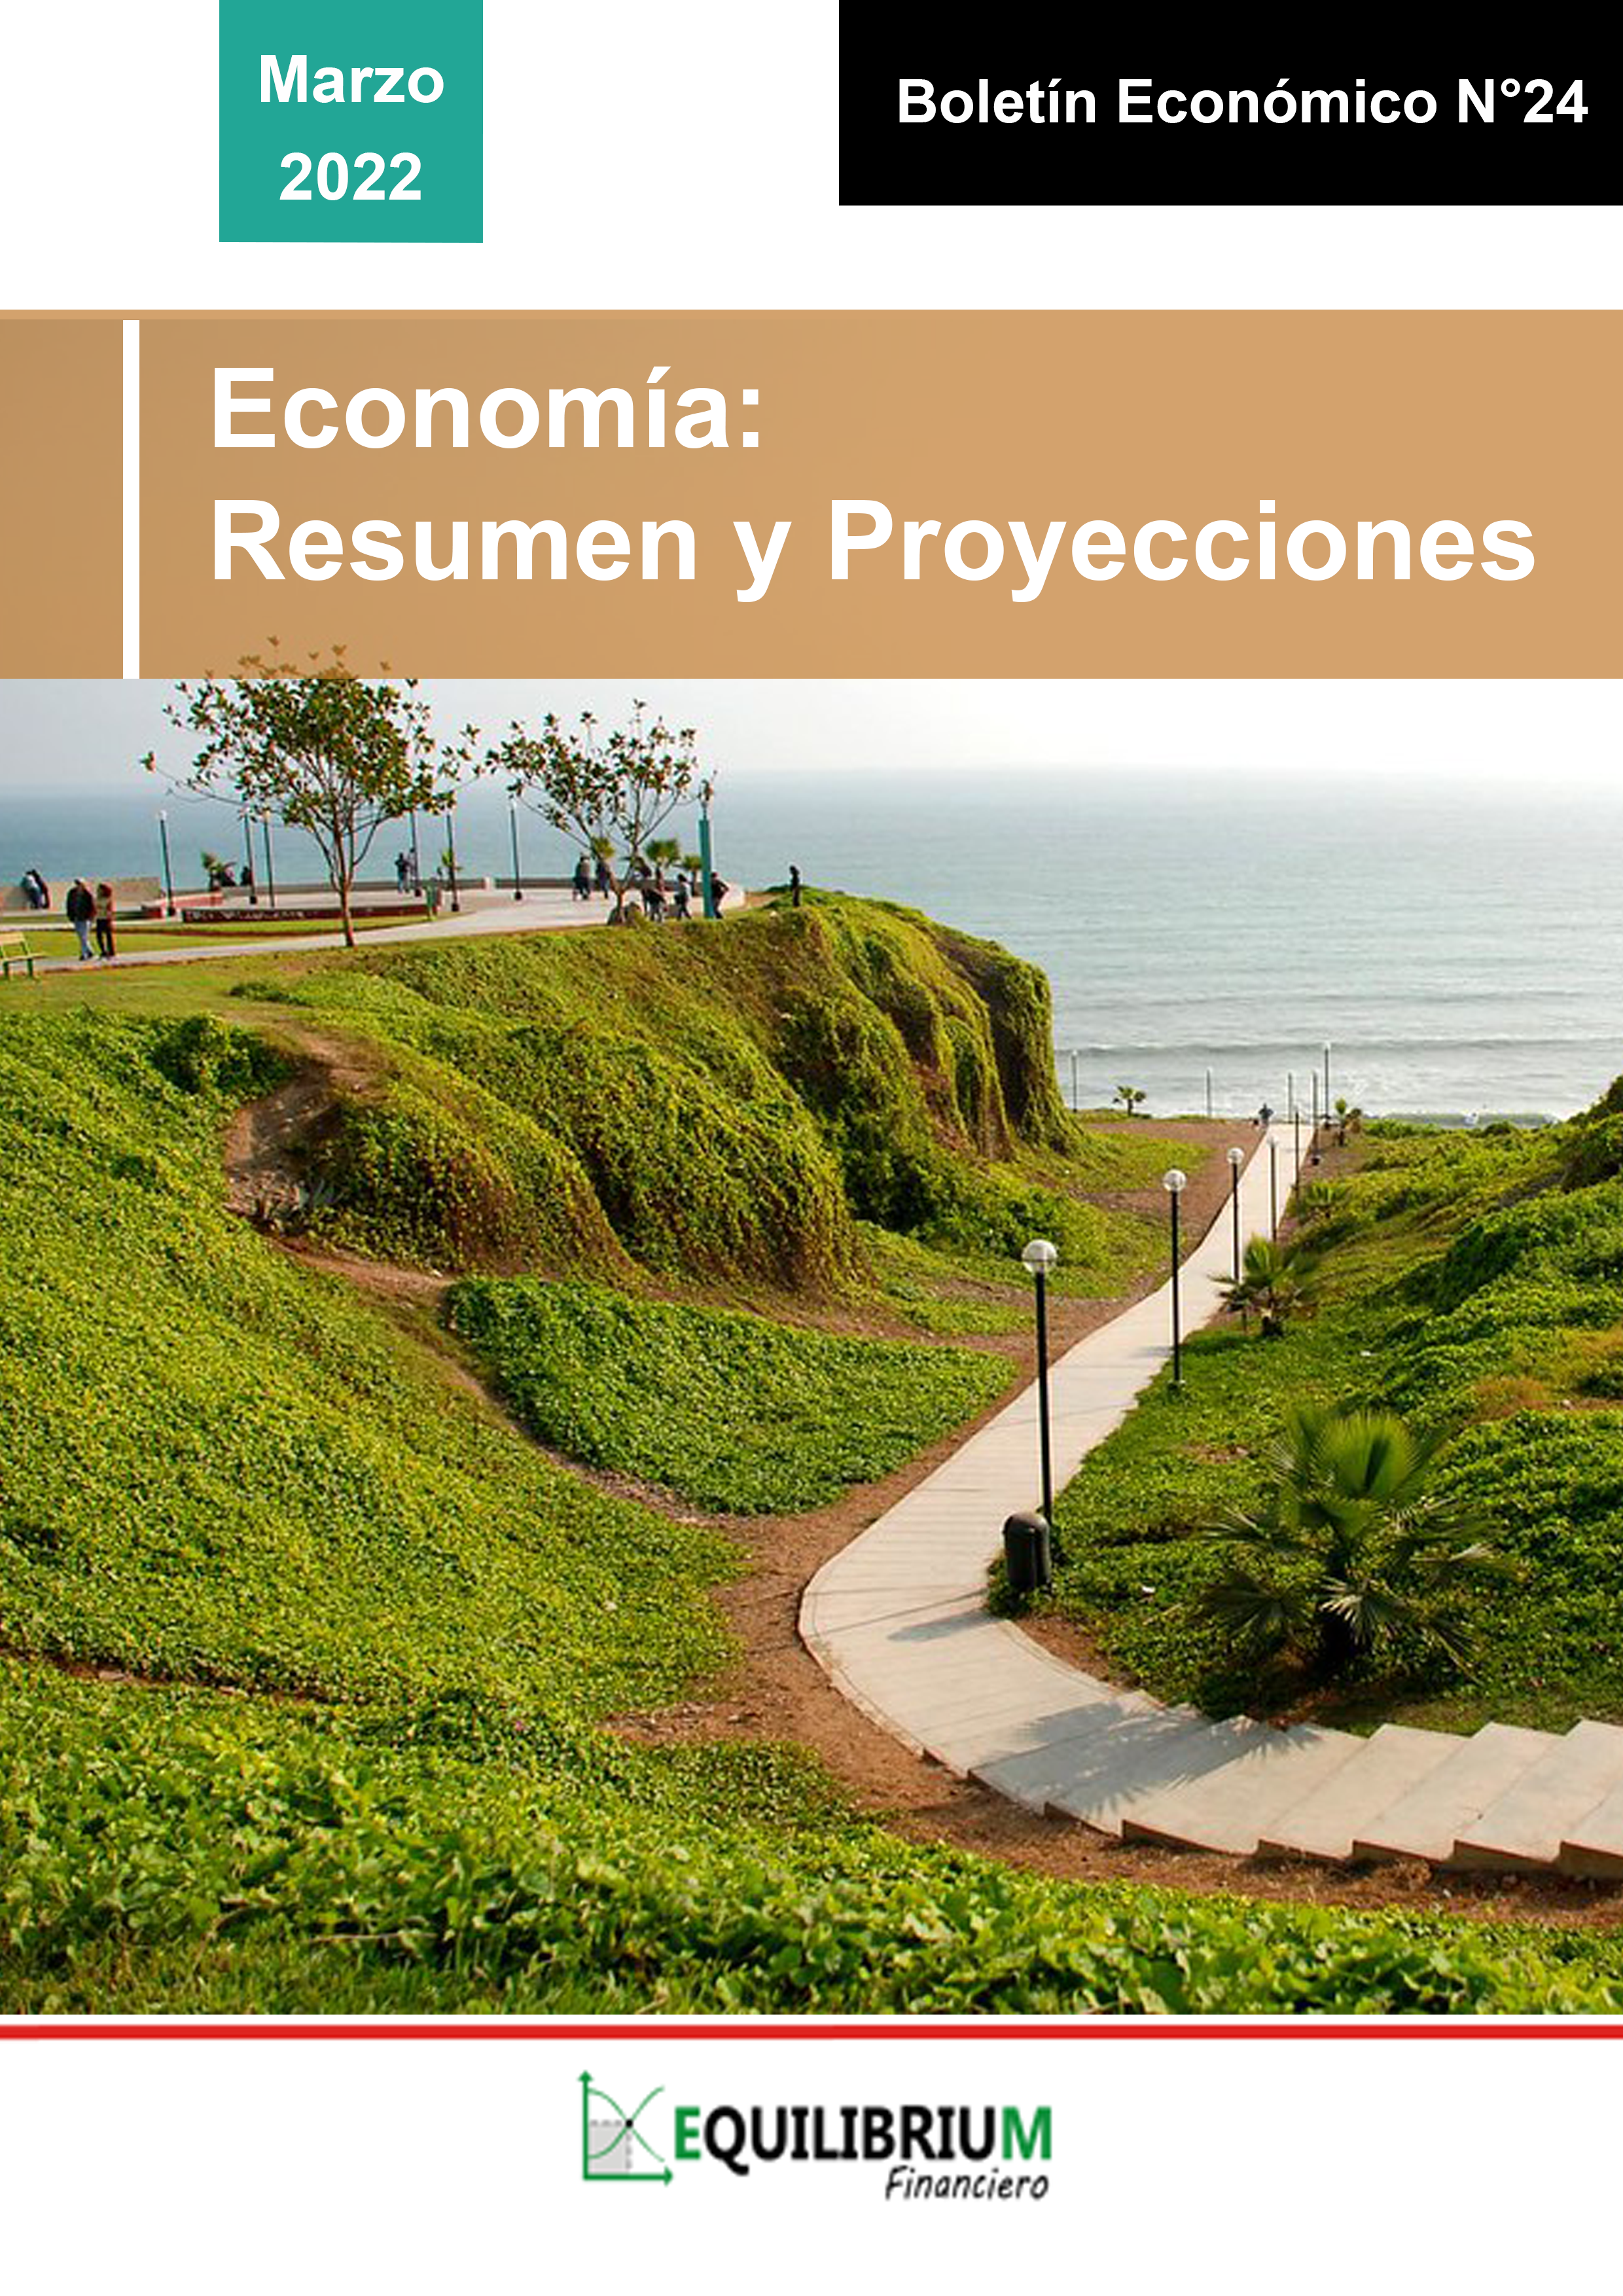 Economía: Resumen y Proyecciones Marzo 2022